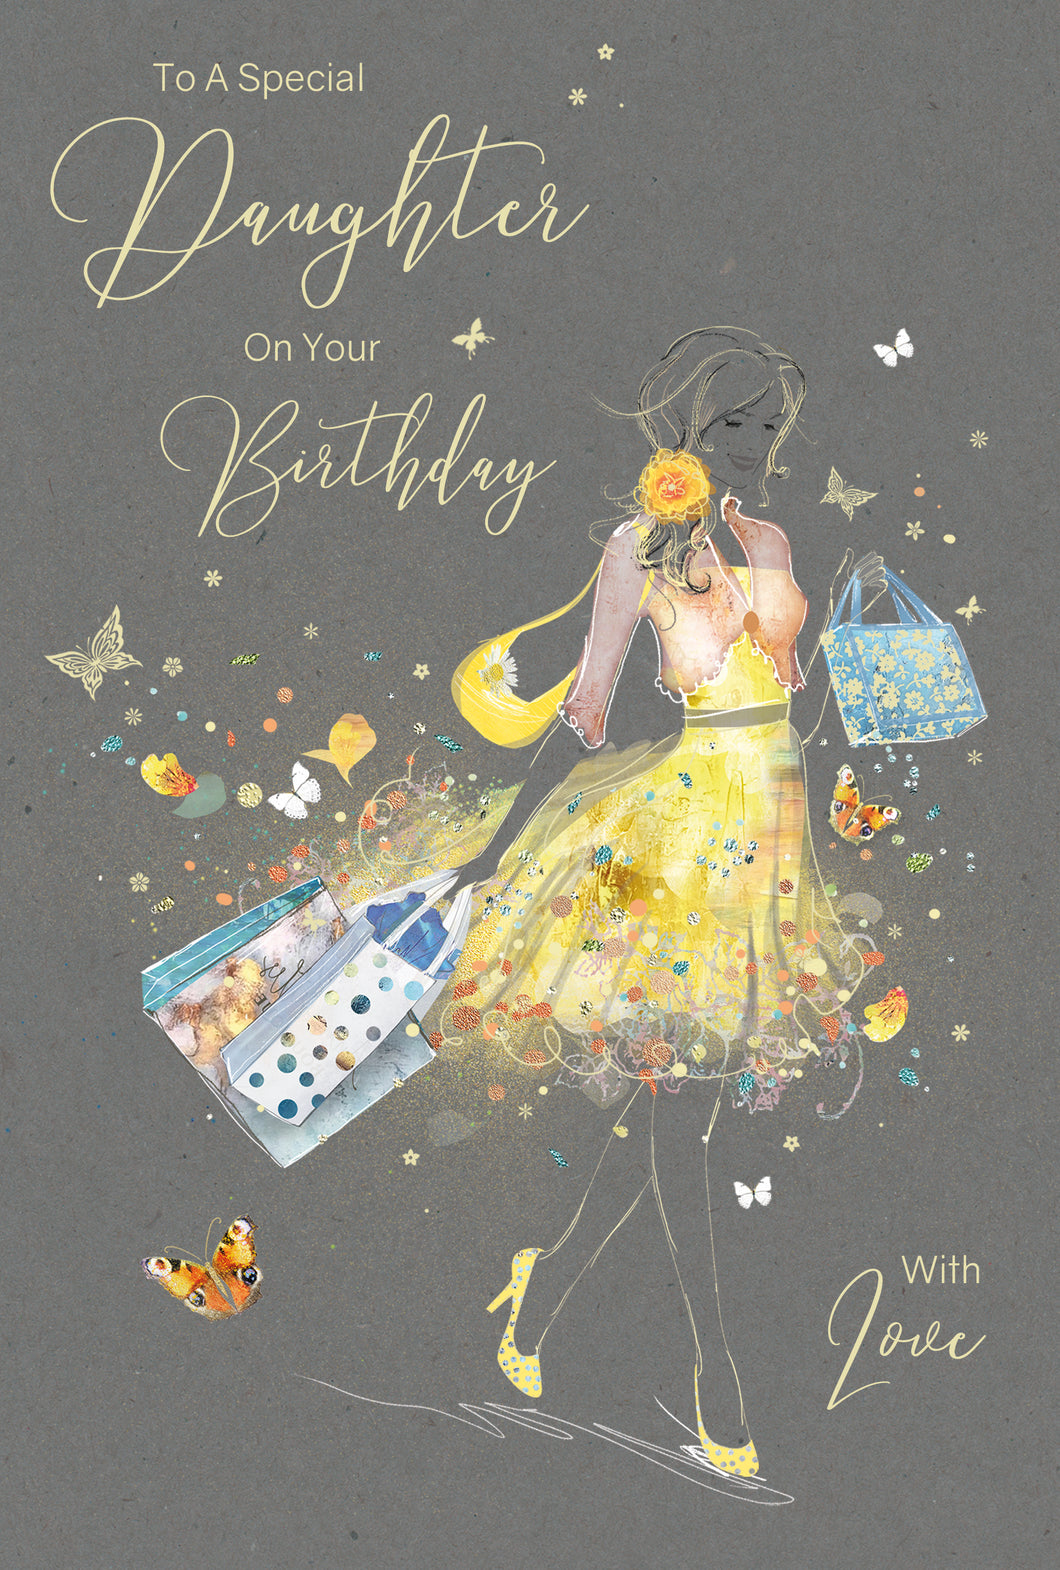 Daughter Birthday Card - Daughter Birthday Cards